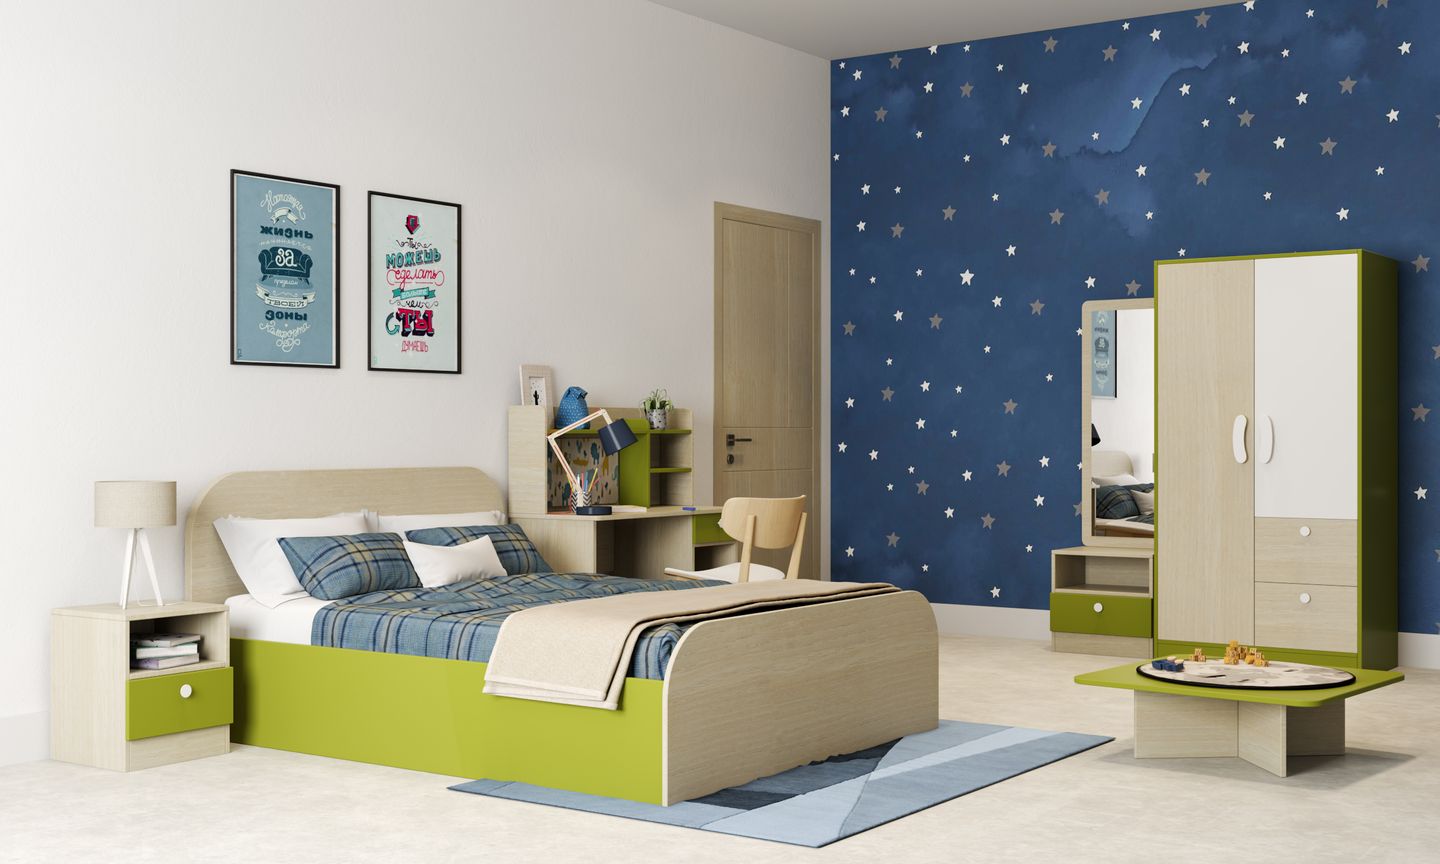 Starry Kids Bedroom Interior Design